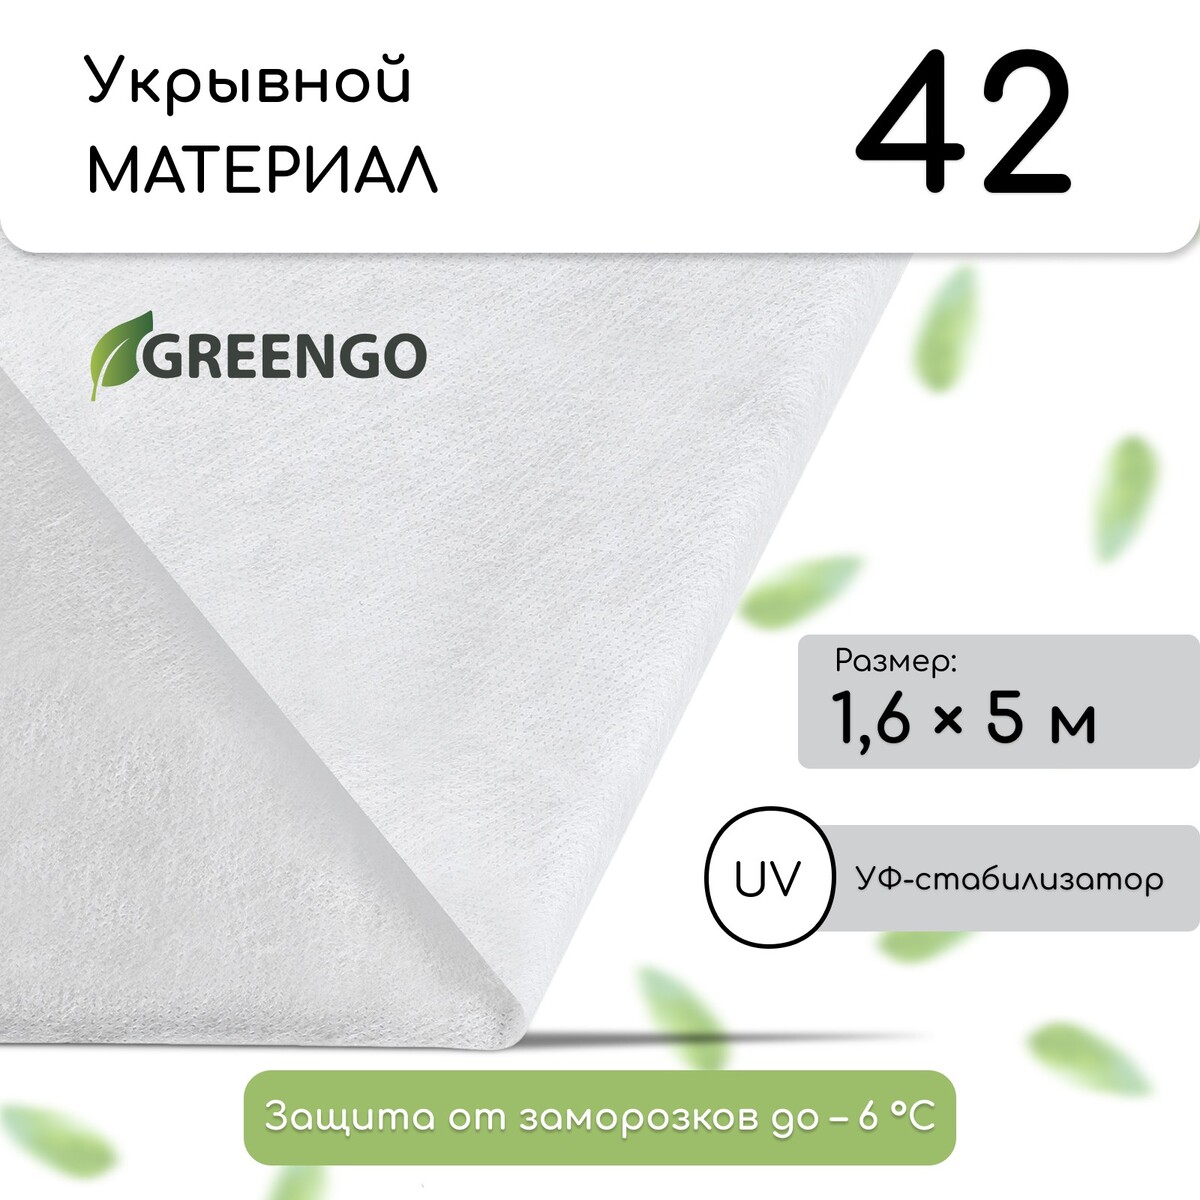 Материал укрывной, 5 × 1.6 м, плотность 42 г/м², спанбонд с уф-стабилизатором, белый, greengo, эконом 30%